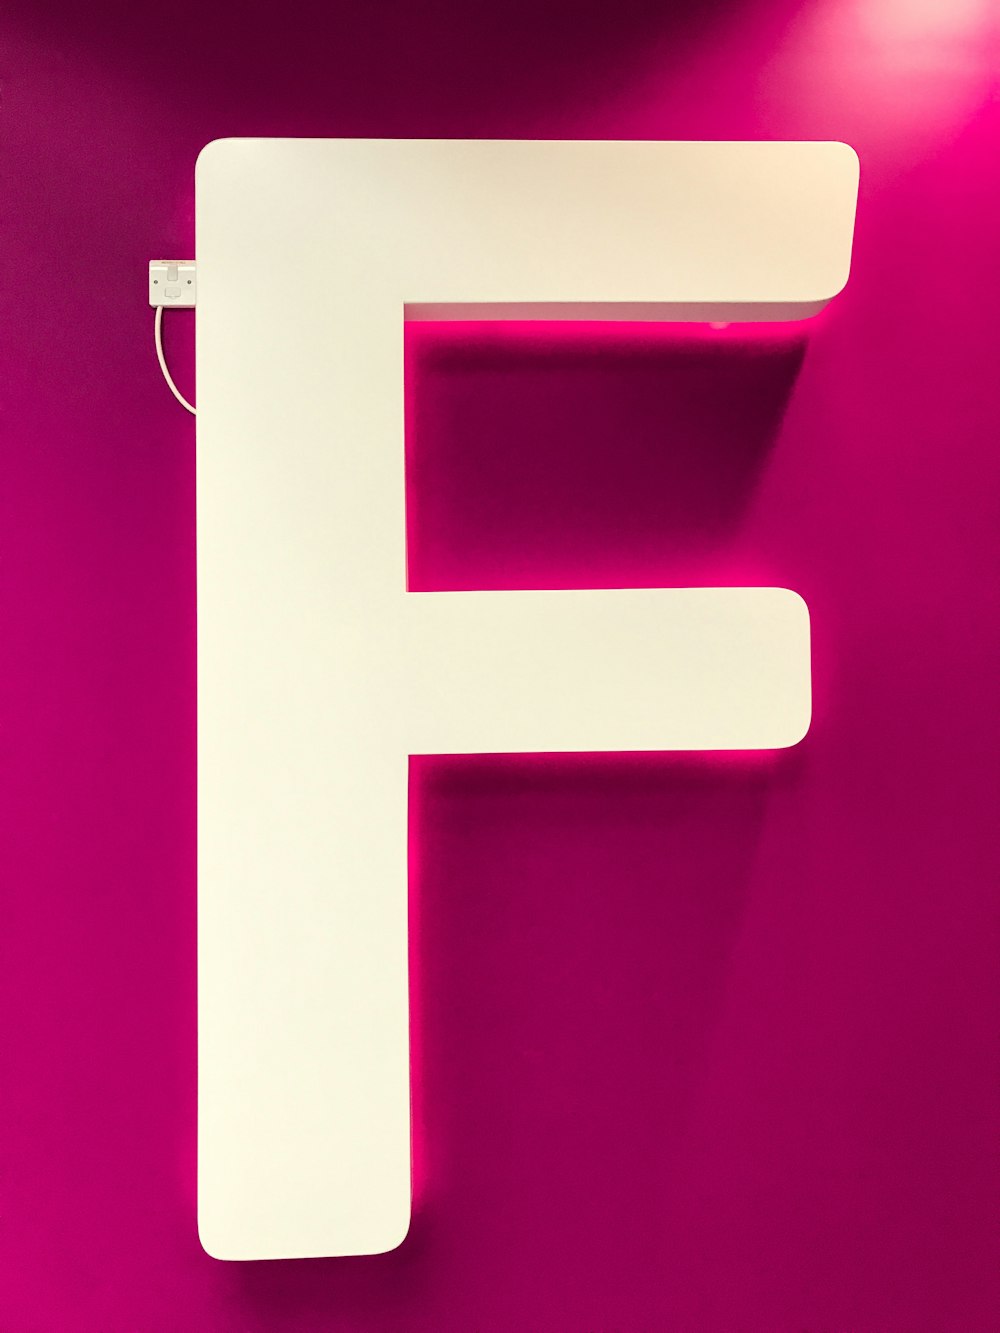 letter F signage